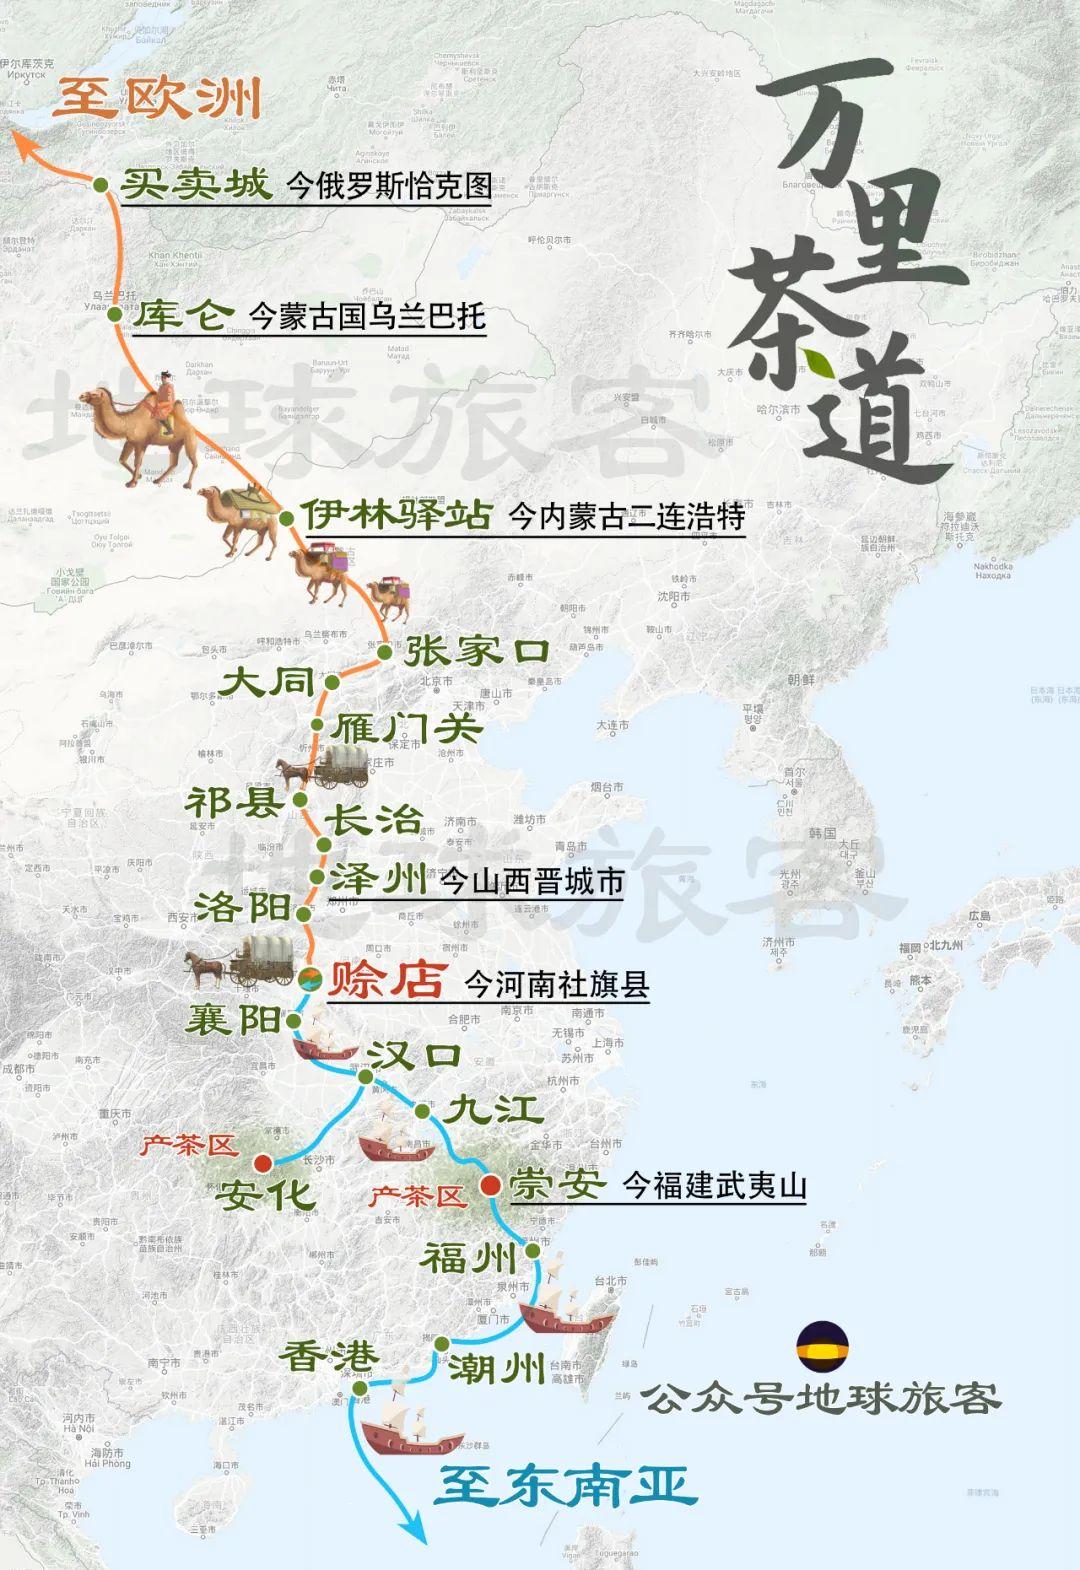 晋商茶路路线图图片